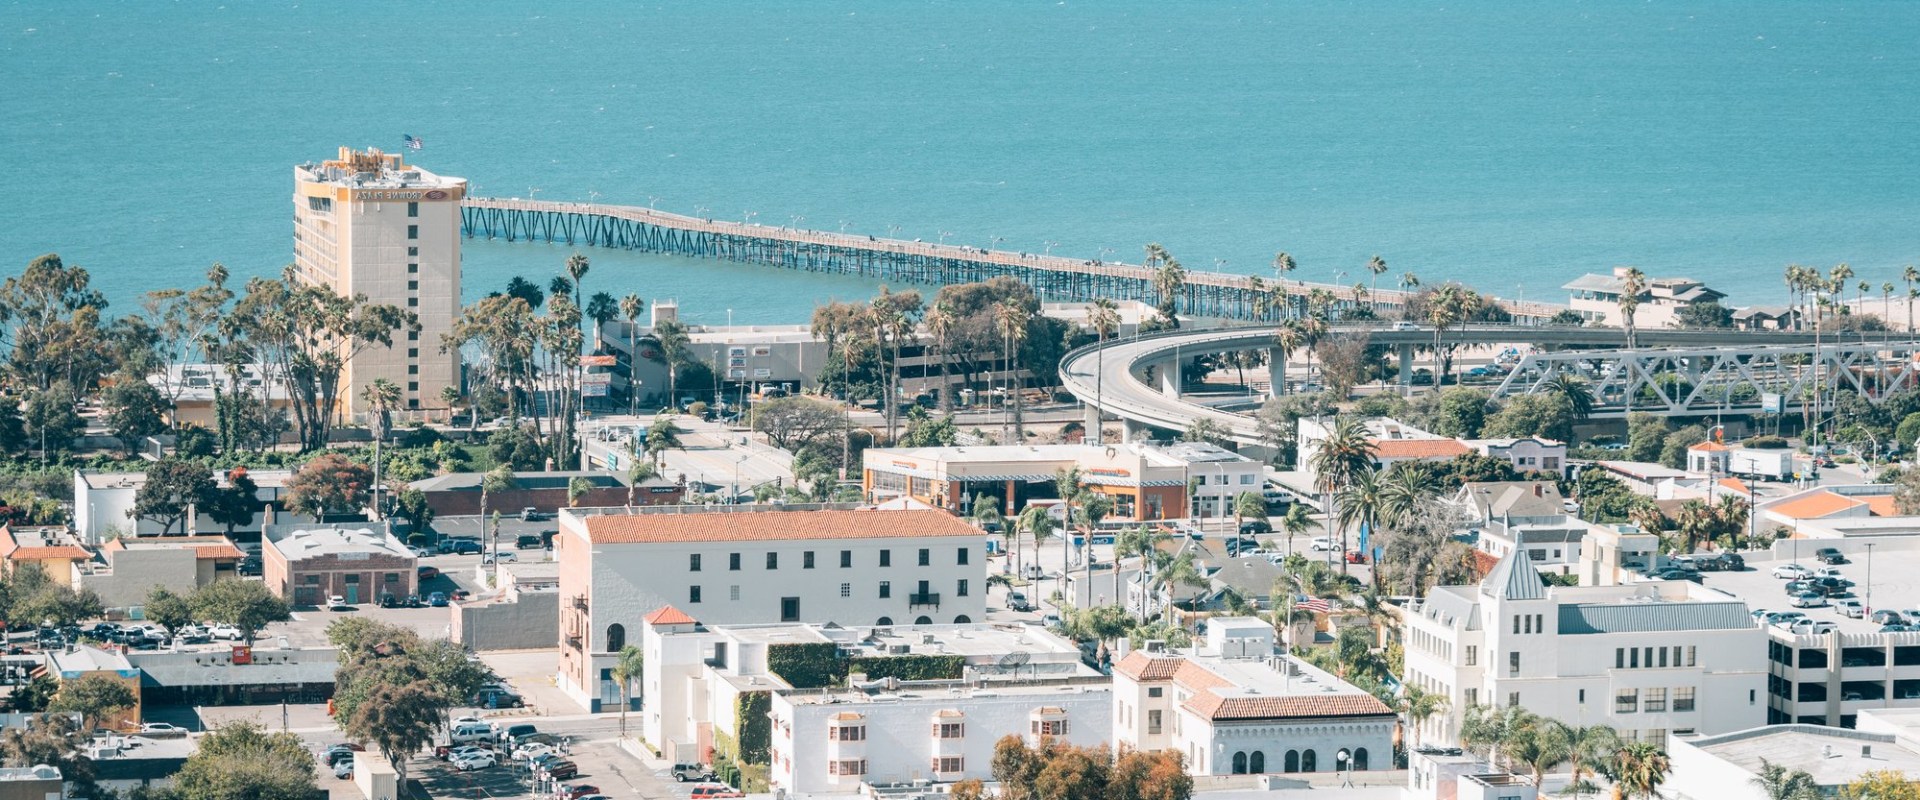 The Best Neighborhoods for Families in Ventura County, CA